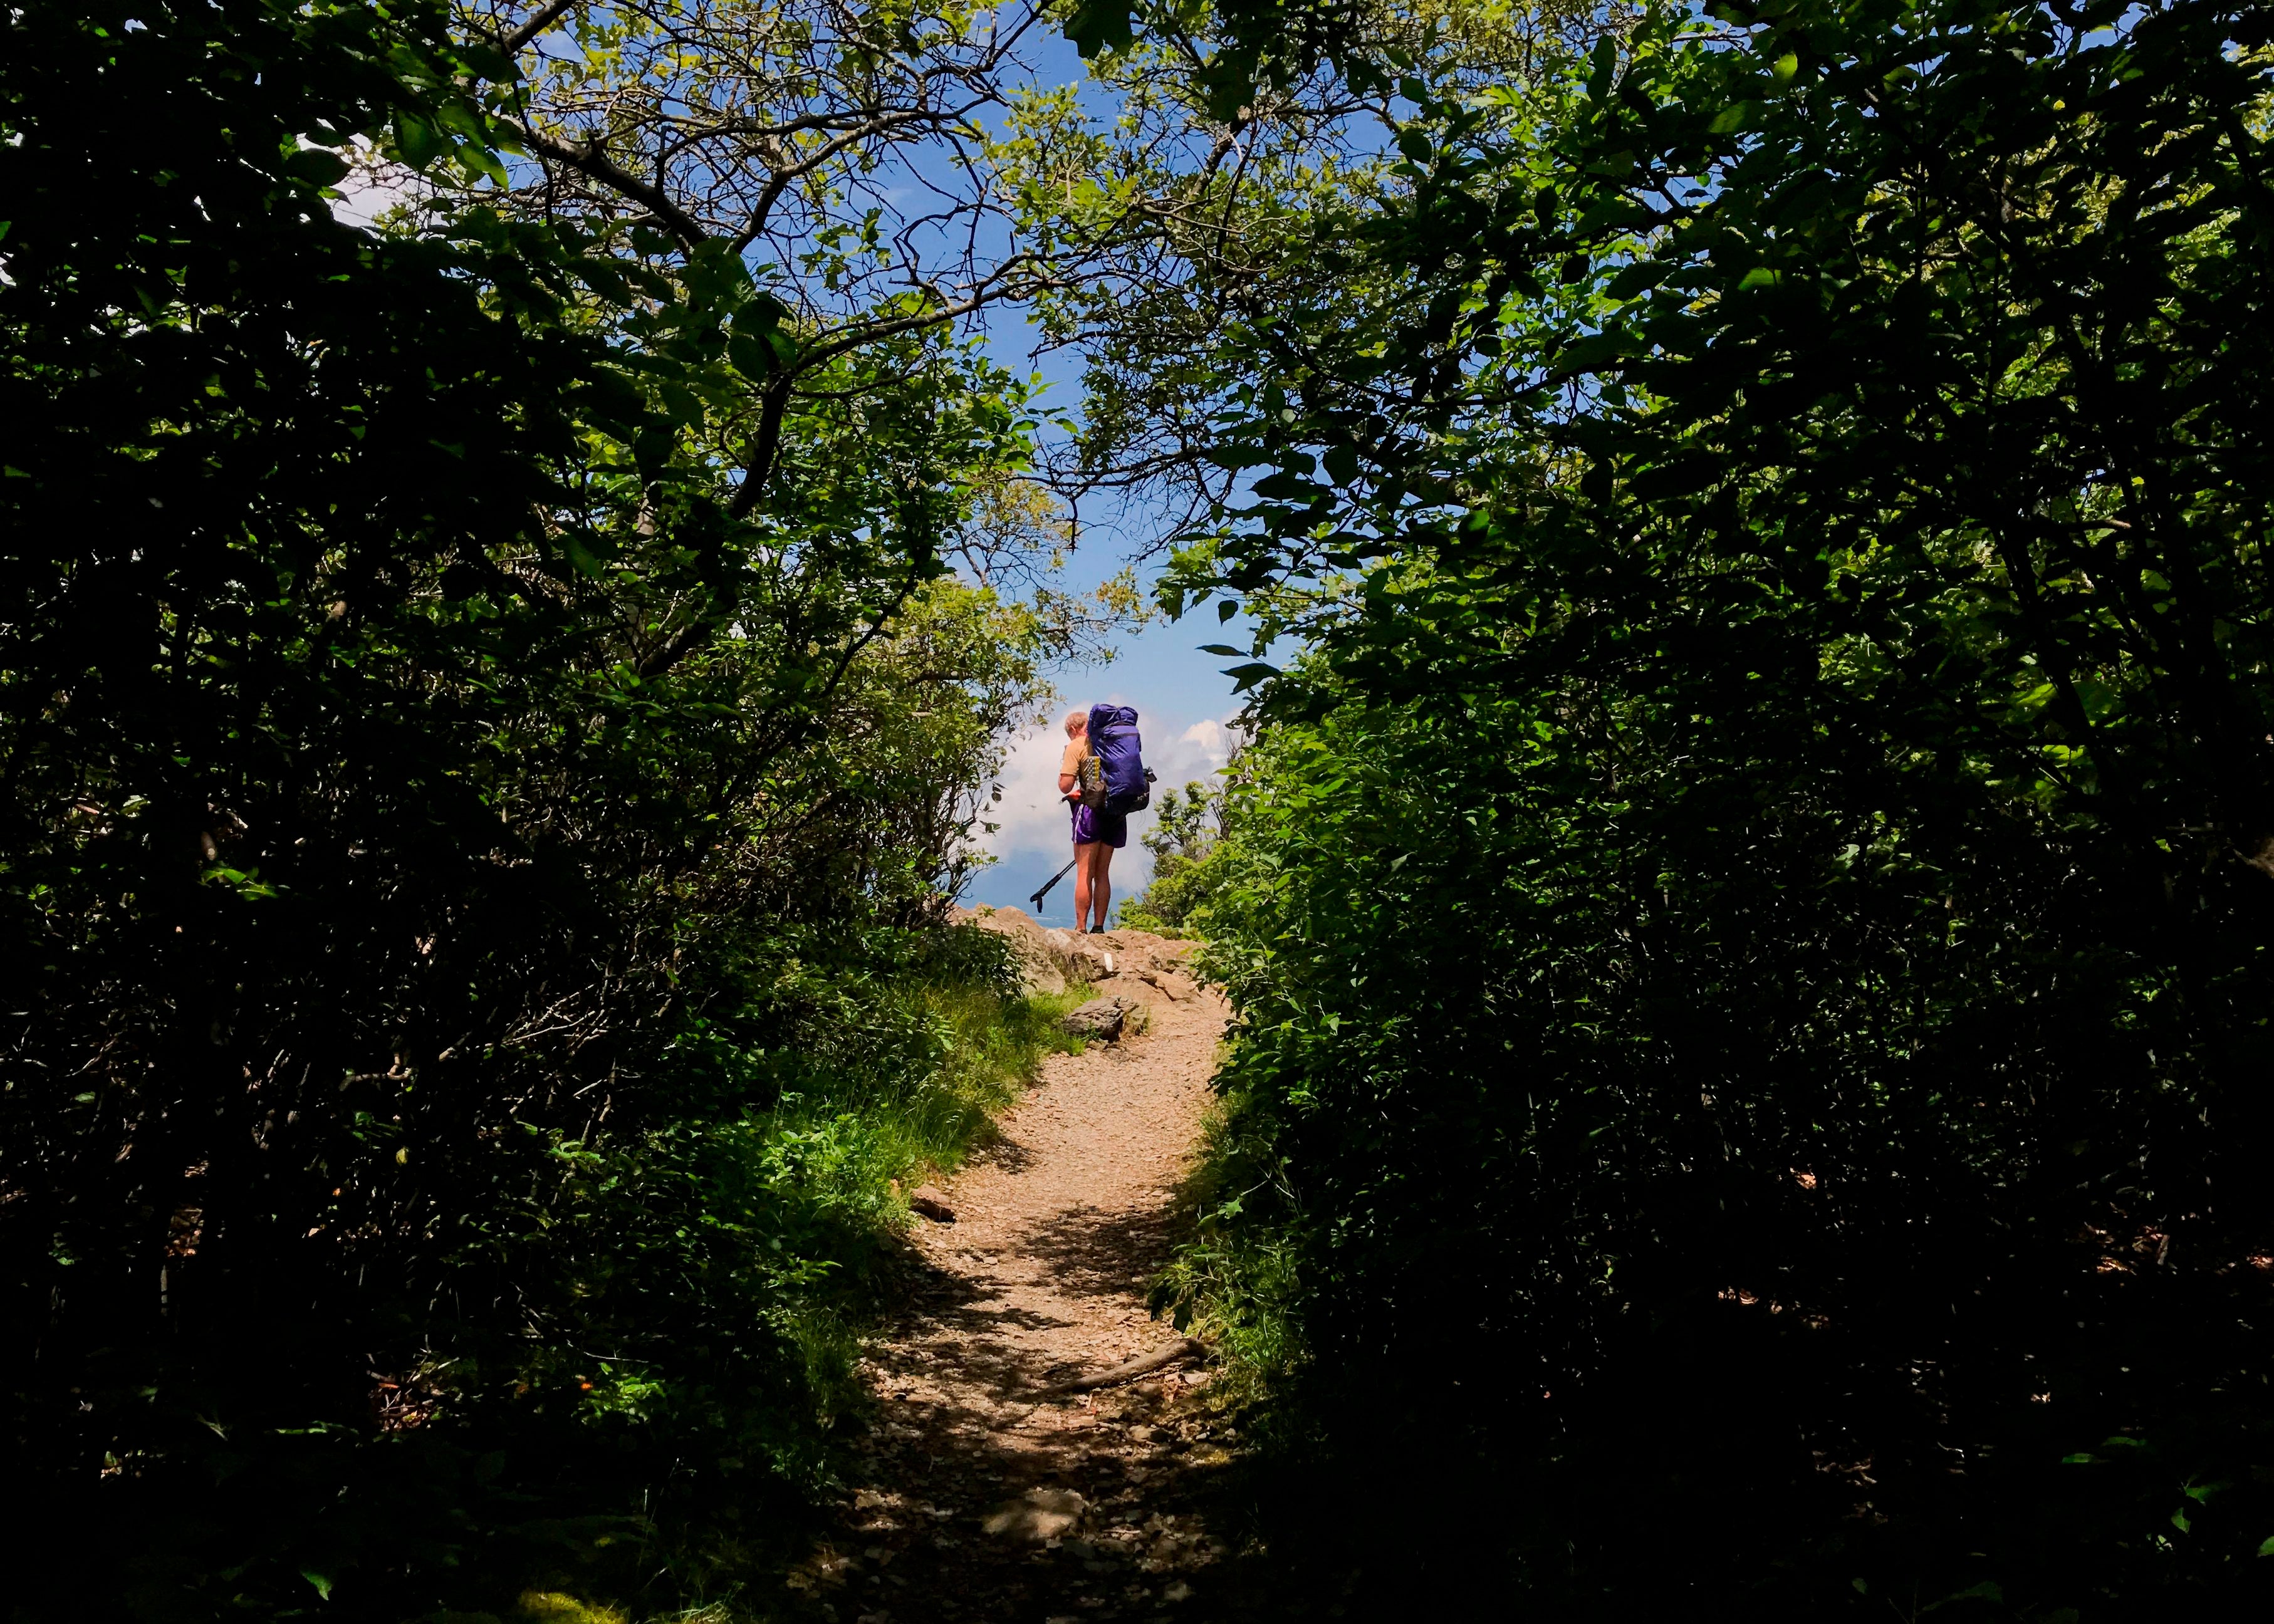 The Appalachian Trail stretches from Springer Mountain, Georgia, to Mount Katahdin, Maine